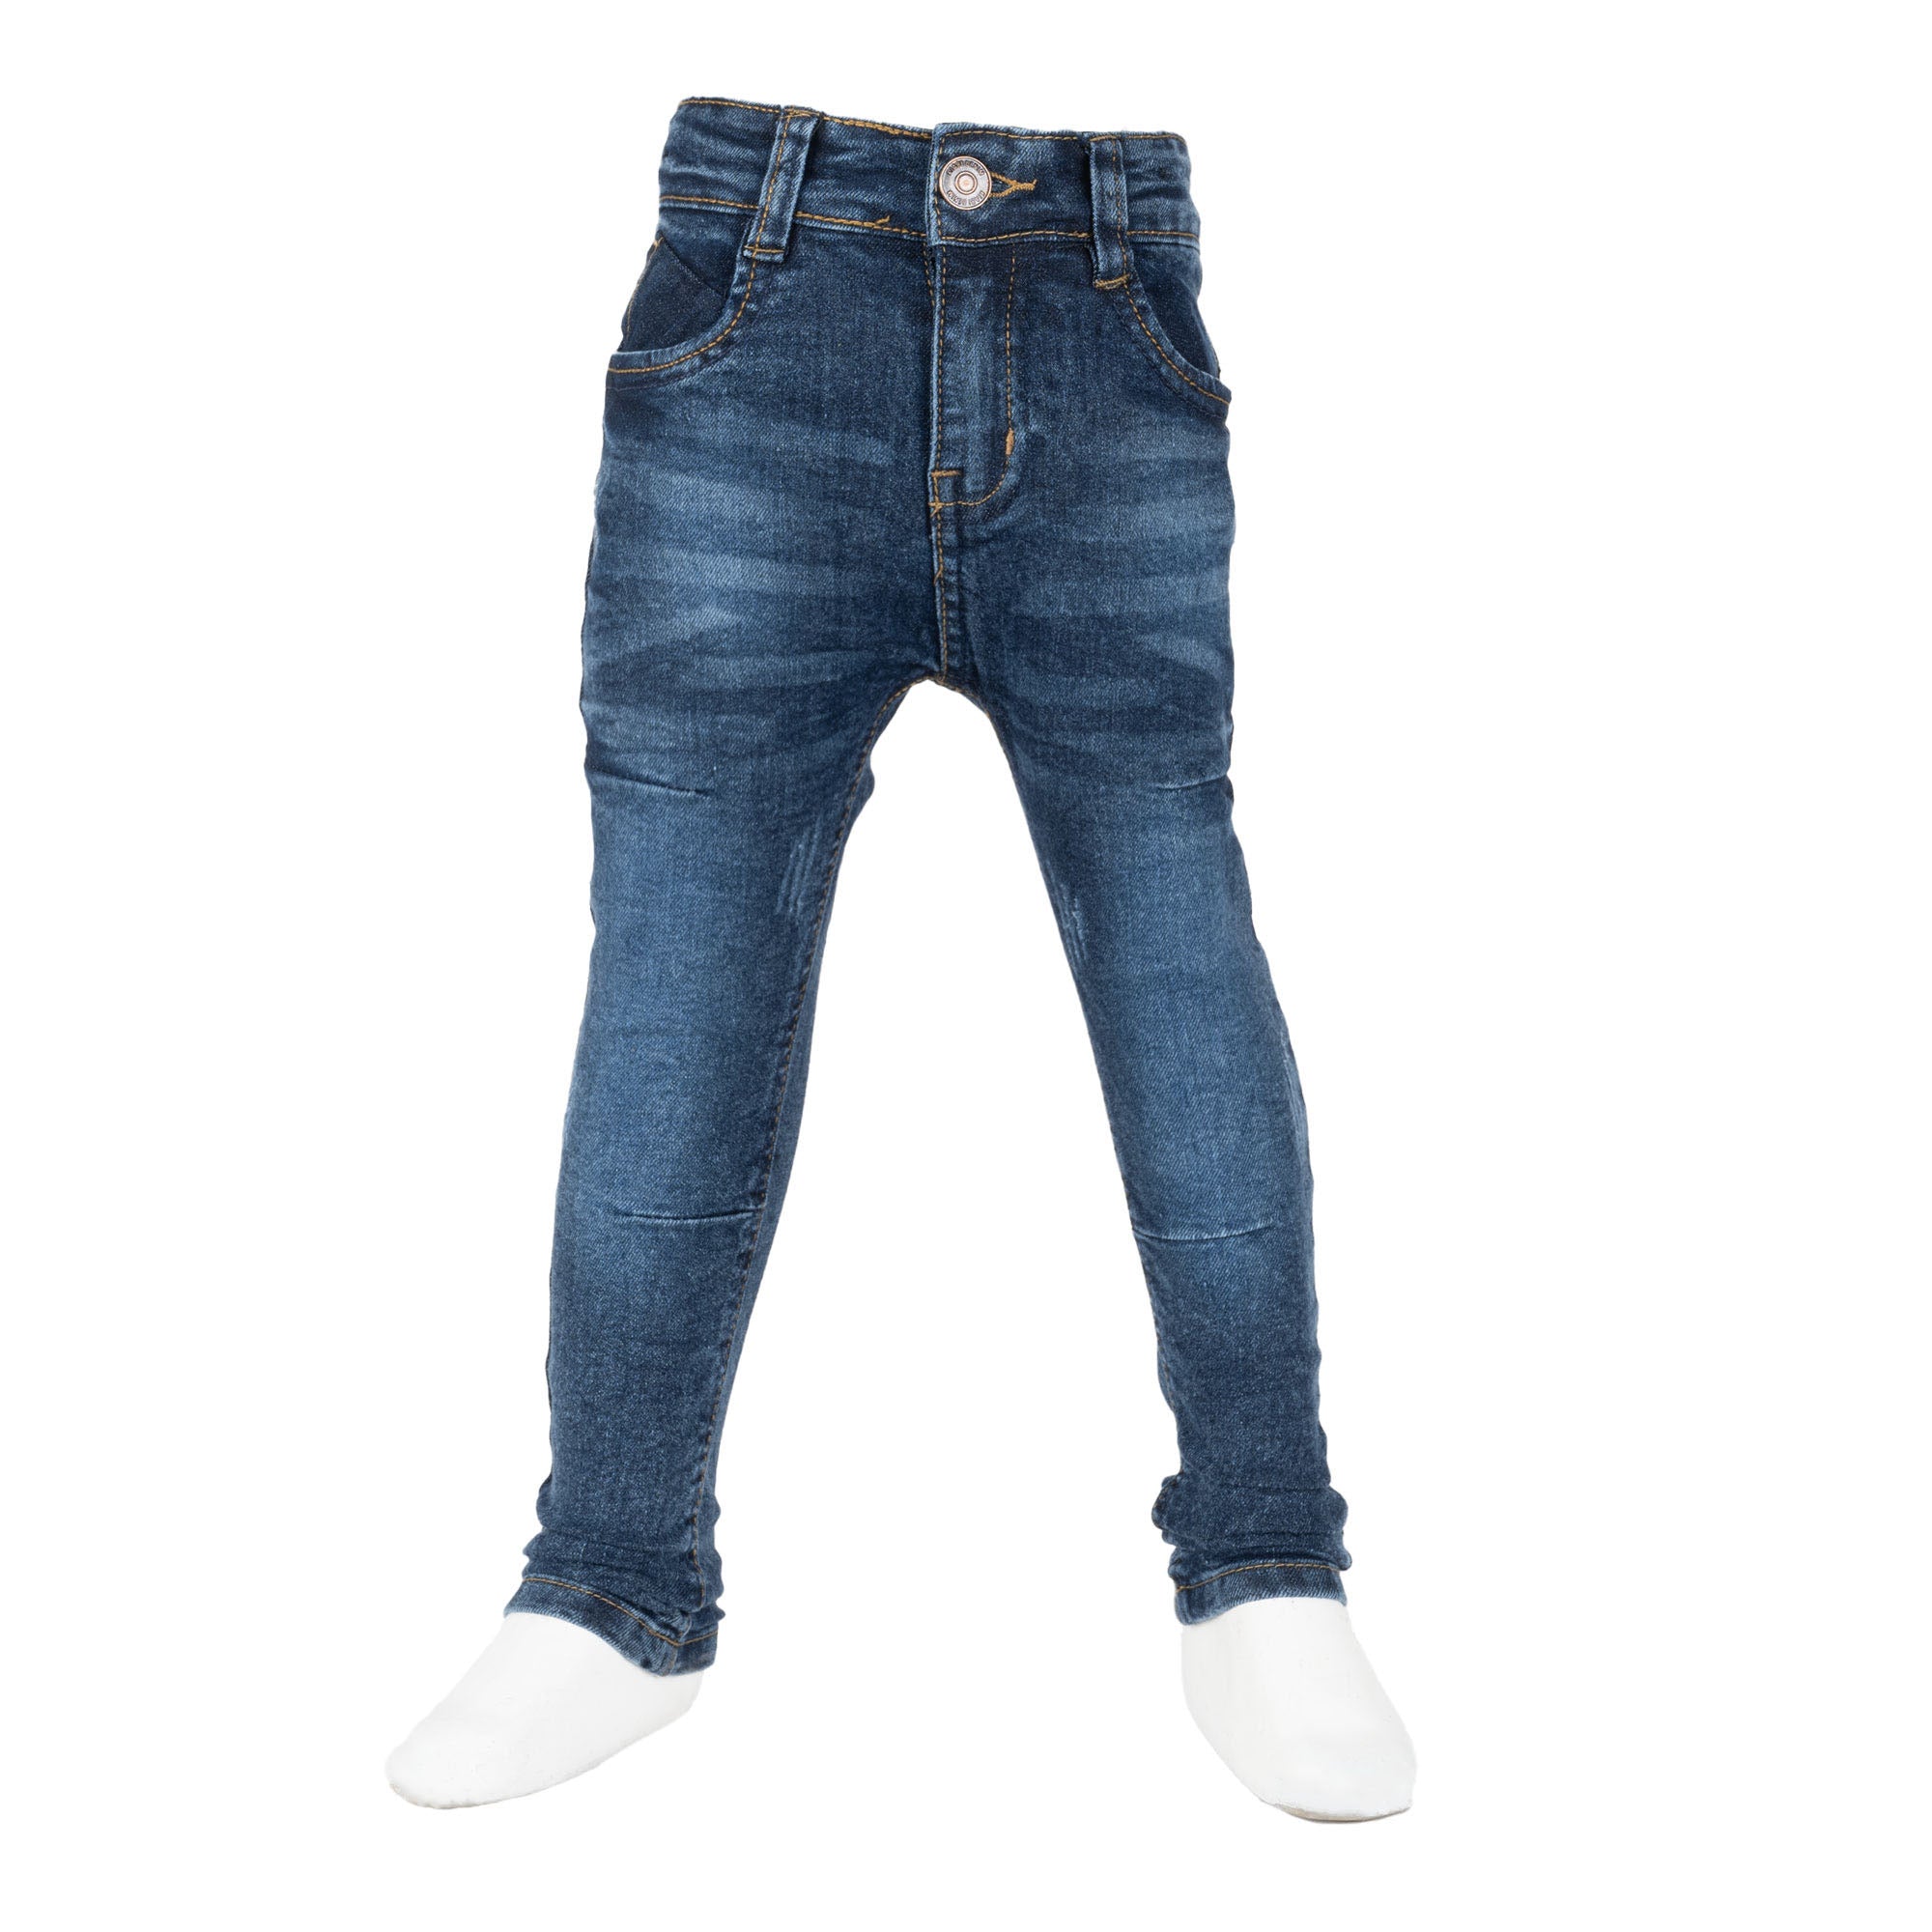 Finelook Boys Denim Jeans